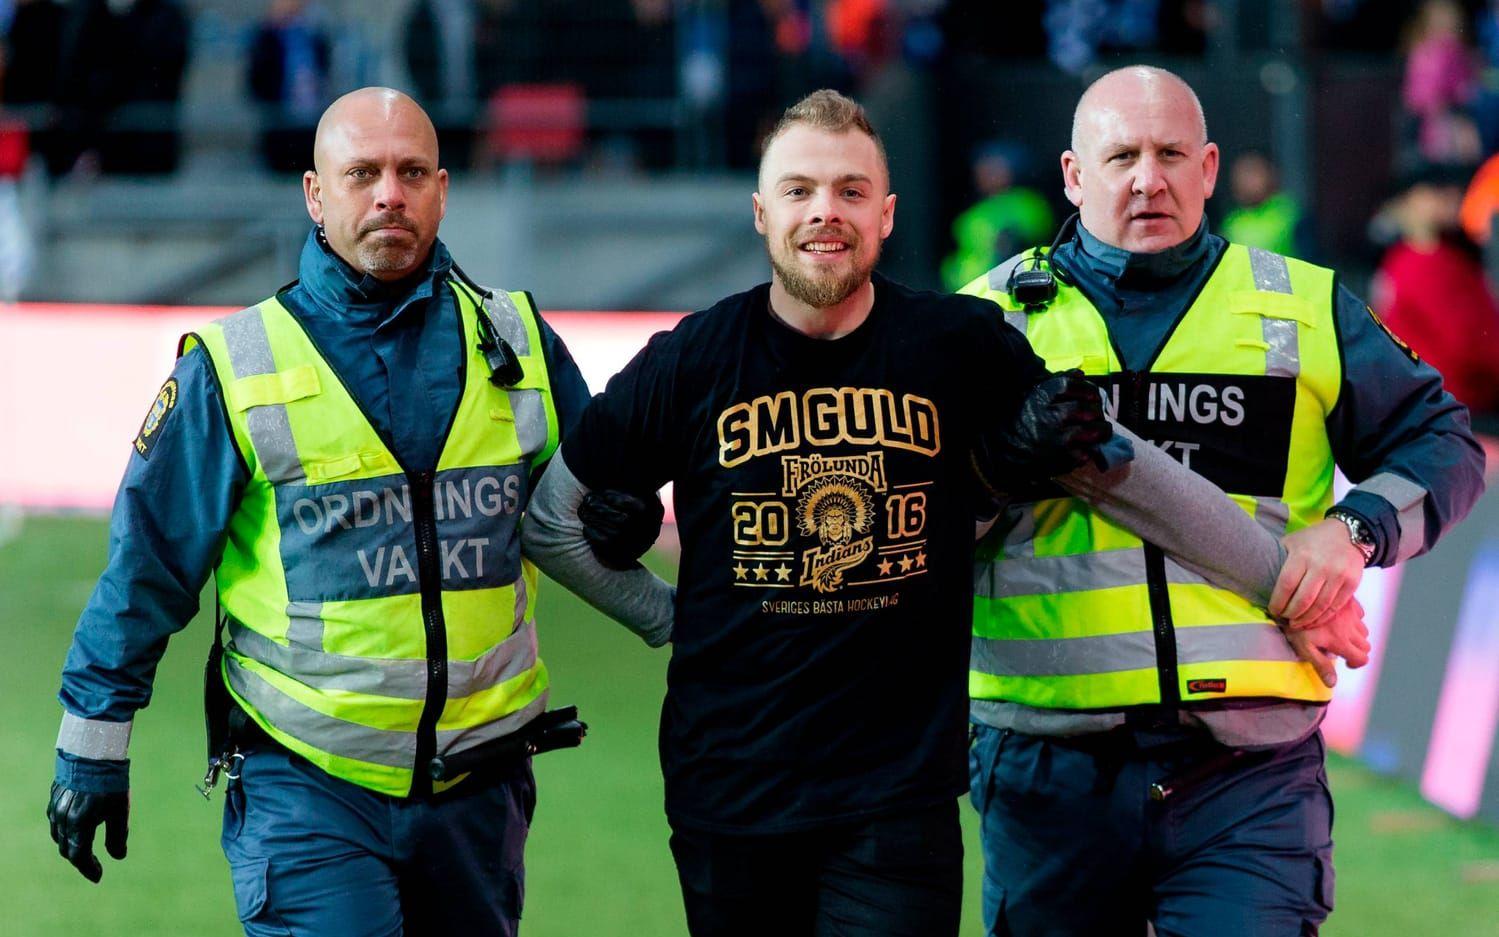 Frölundas guldhjälte Mats Rosseli Olsen förs bort av säkerhetspersonal sedan han stormat planen: Bild: Bildbyrån